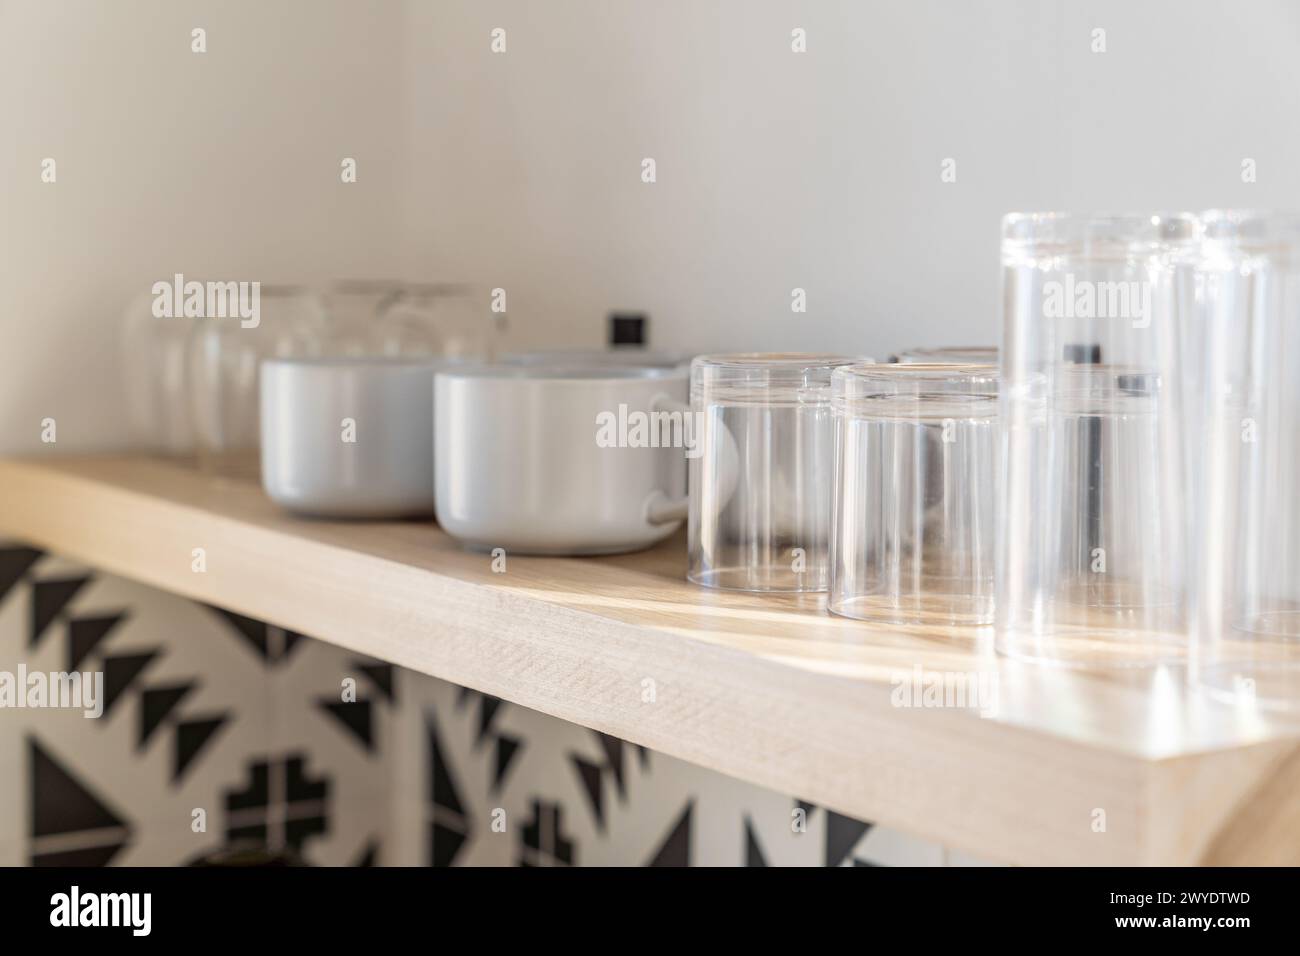 Tazze e bicchieri da caffè su un ripiano galleggiante in legno in una cucina moderna con piastrelle bianche e nere Foto Stock